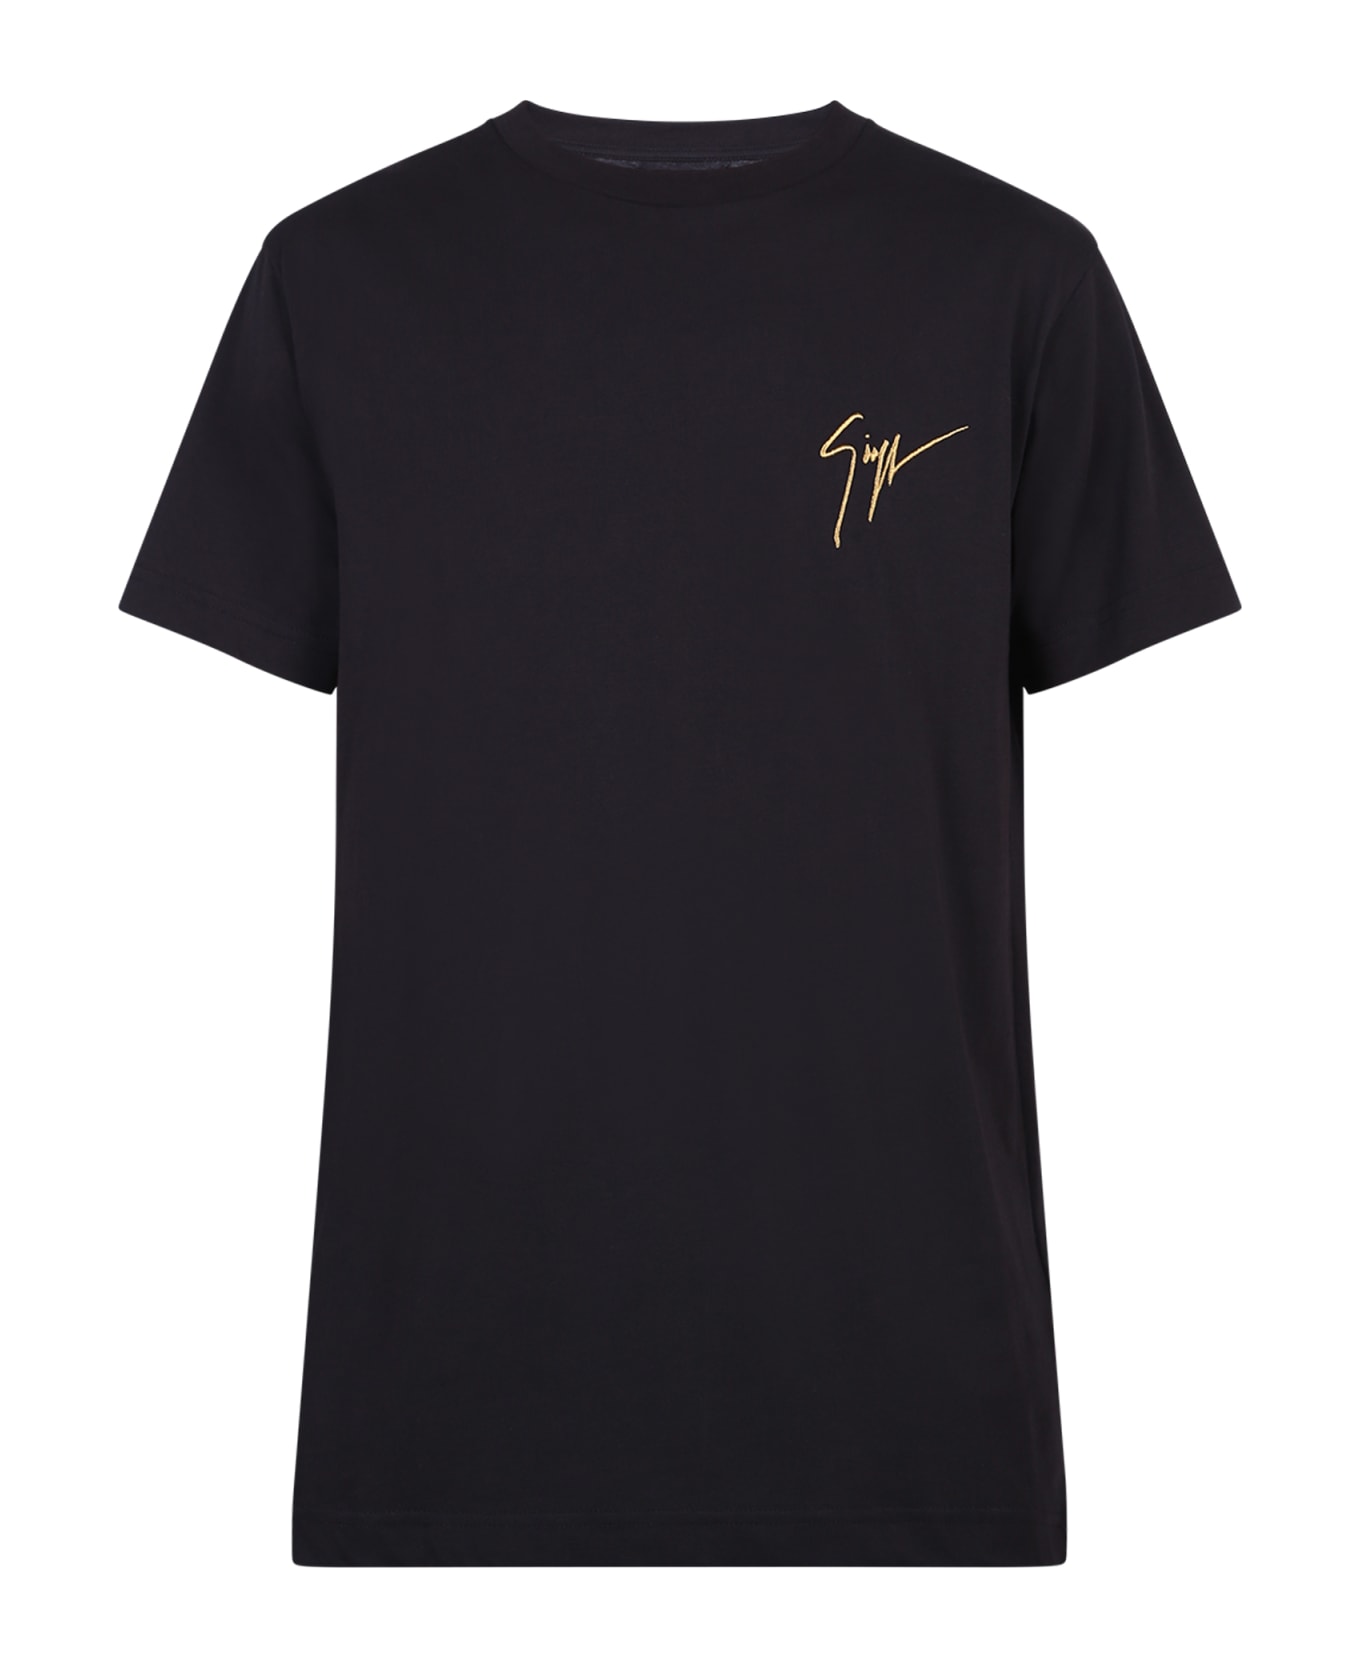 Giuseppe Zanotti Branded T-shirt - Black シャツ